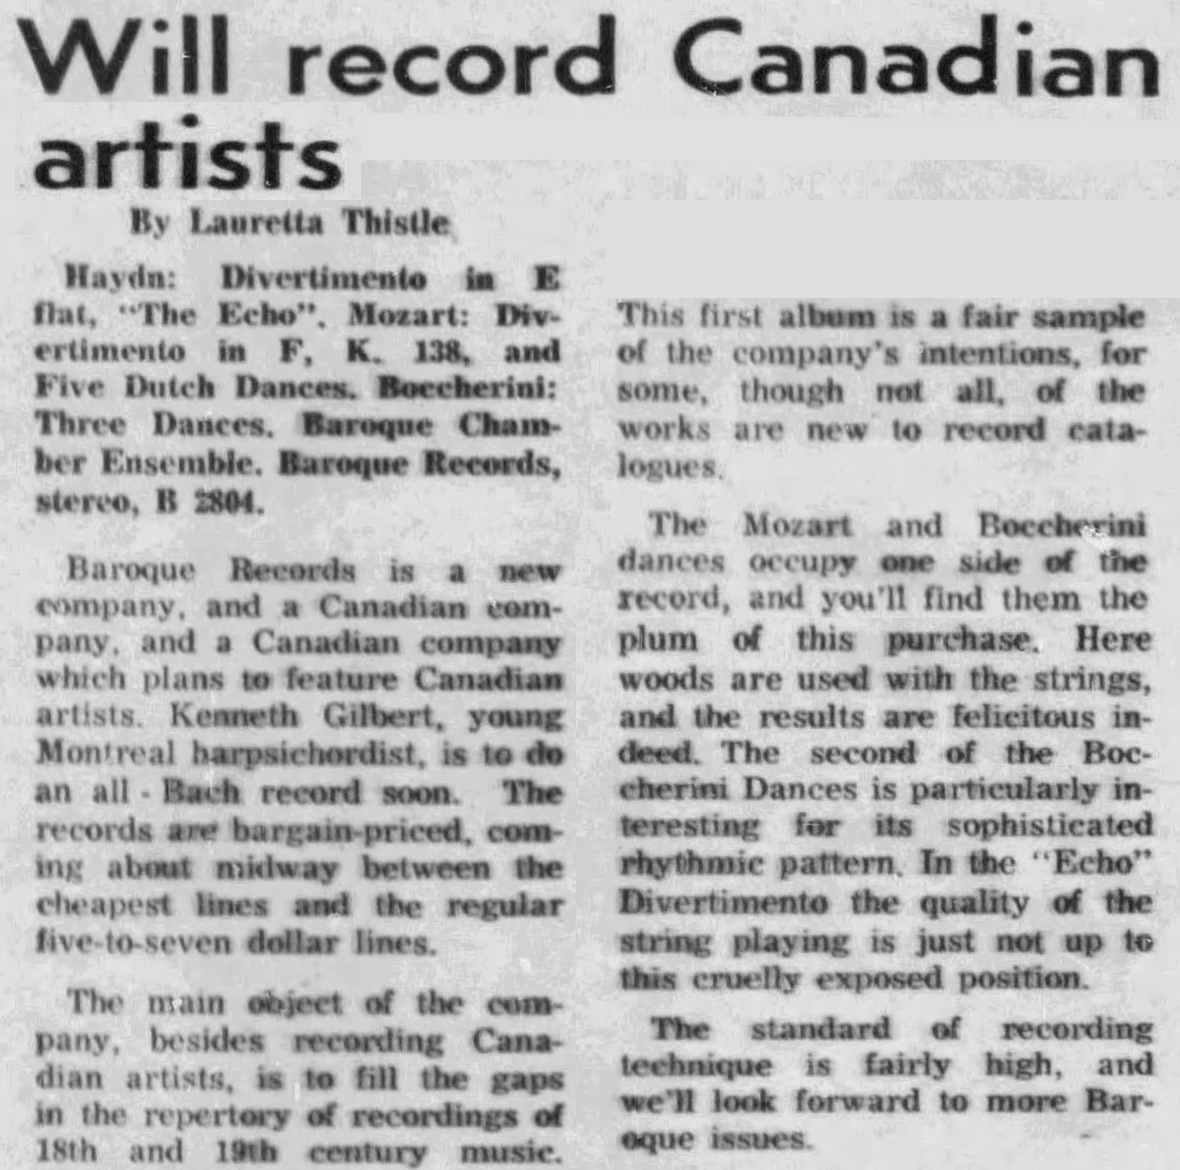 cité du quotidien «The Ottawa Citizen», 21 janvier 1962, Page 75